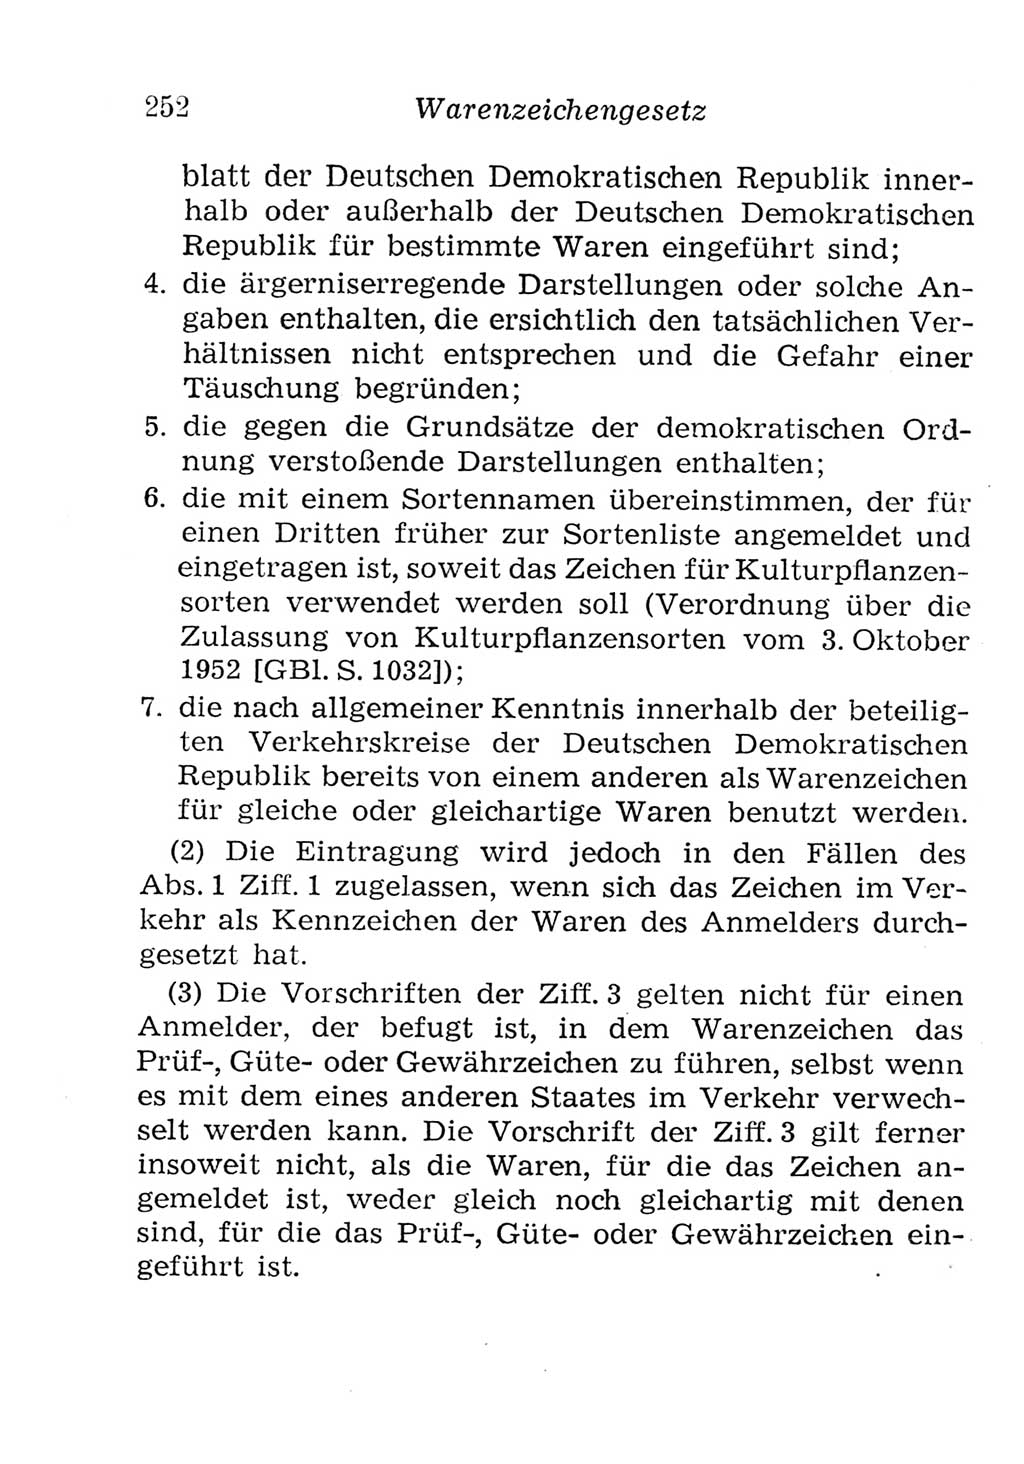 Strafgesetzbuch (StGB) und andere Strafgesetze [Deutsche Demokratische Republik (DDR)] 1957, Seite 252 (StGB Strafges. DDR 1957, S. 252)